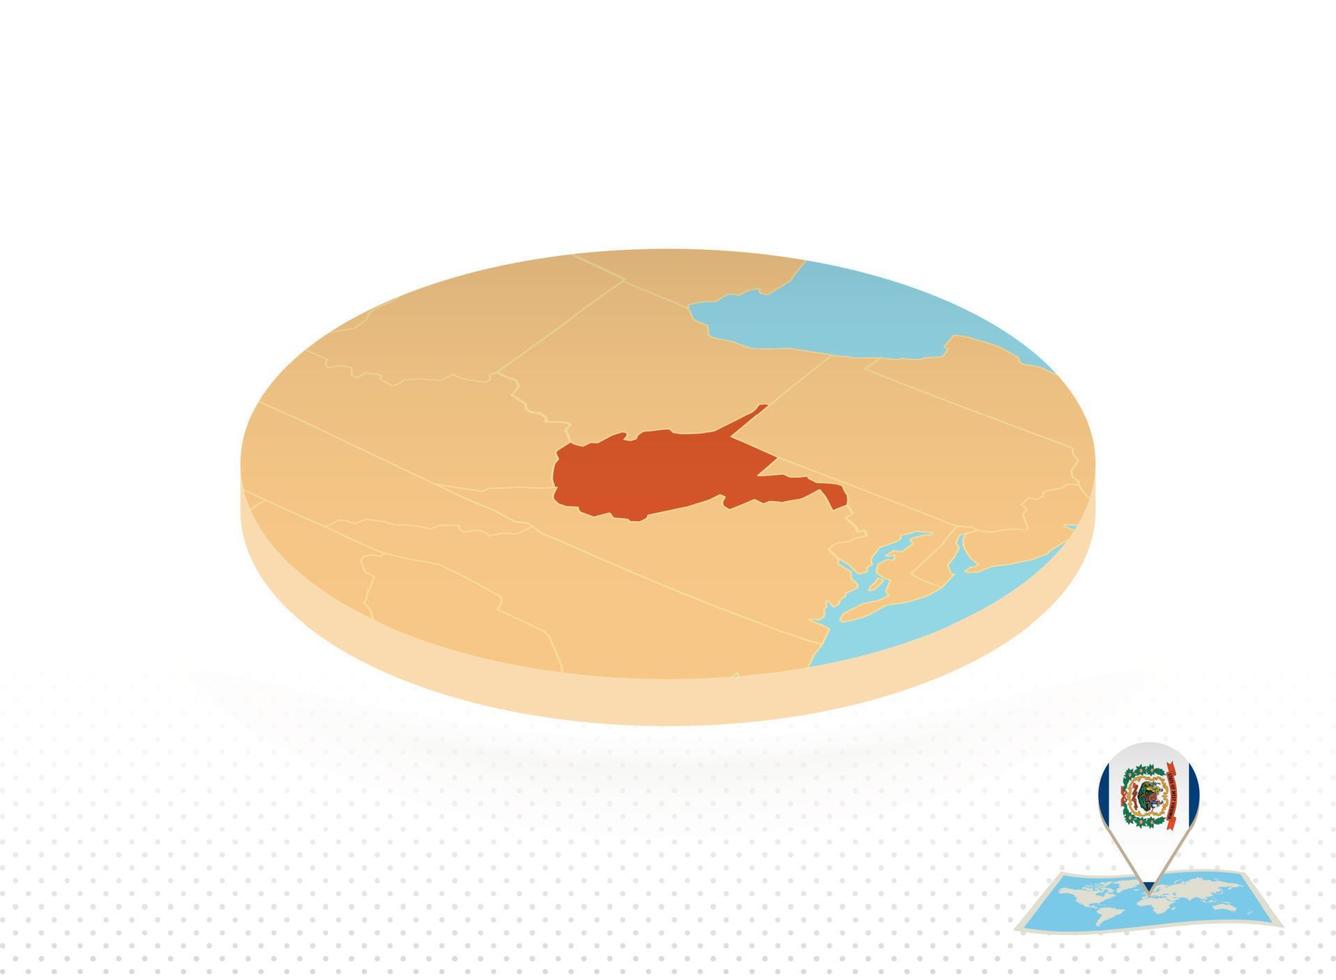 väst virginia stat Karta designad i isometrisk stil, orange cirkel Karta. vektor